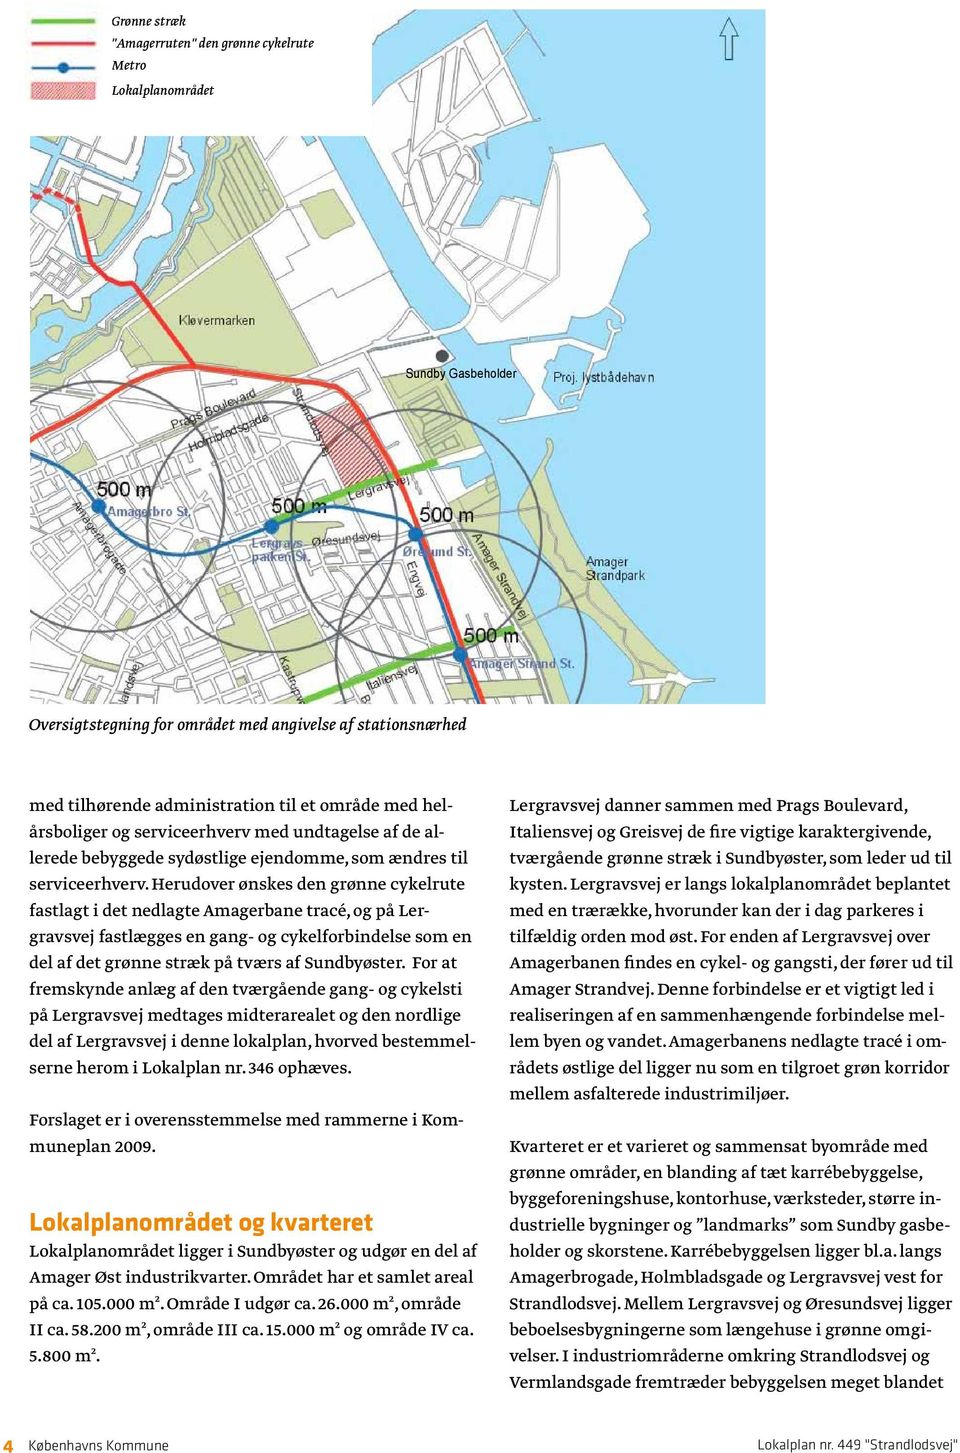 Herudover ønskes den grønne cykelrute fastlagt i det nedlagte Amagerbane tracé, og på Lergravsvej fastlægges en gang- og cykelforbindelse som en del af det grønne stræk på tværs af Sundbyøster.